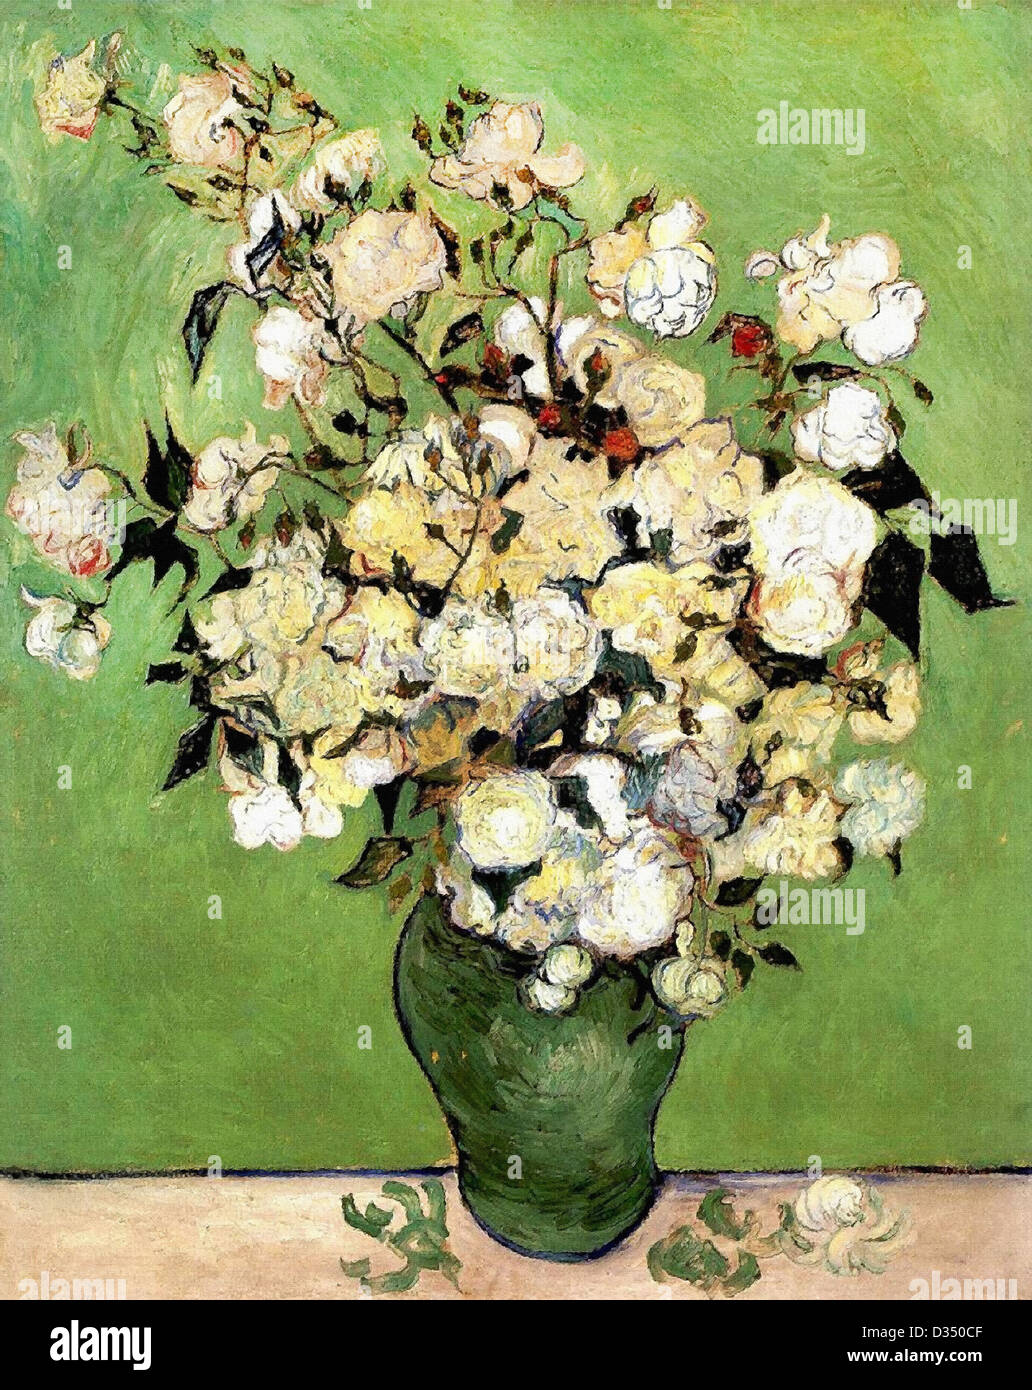 Vincent van Gogh, un vase de roses. 1889. Le postimpressionnisme. Huile sur toile. Collection Privée Annenberg, Palm Springs. Banque D'Images